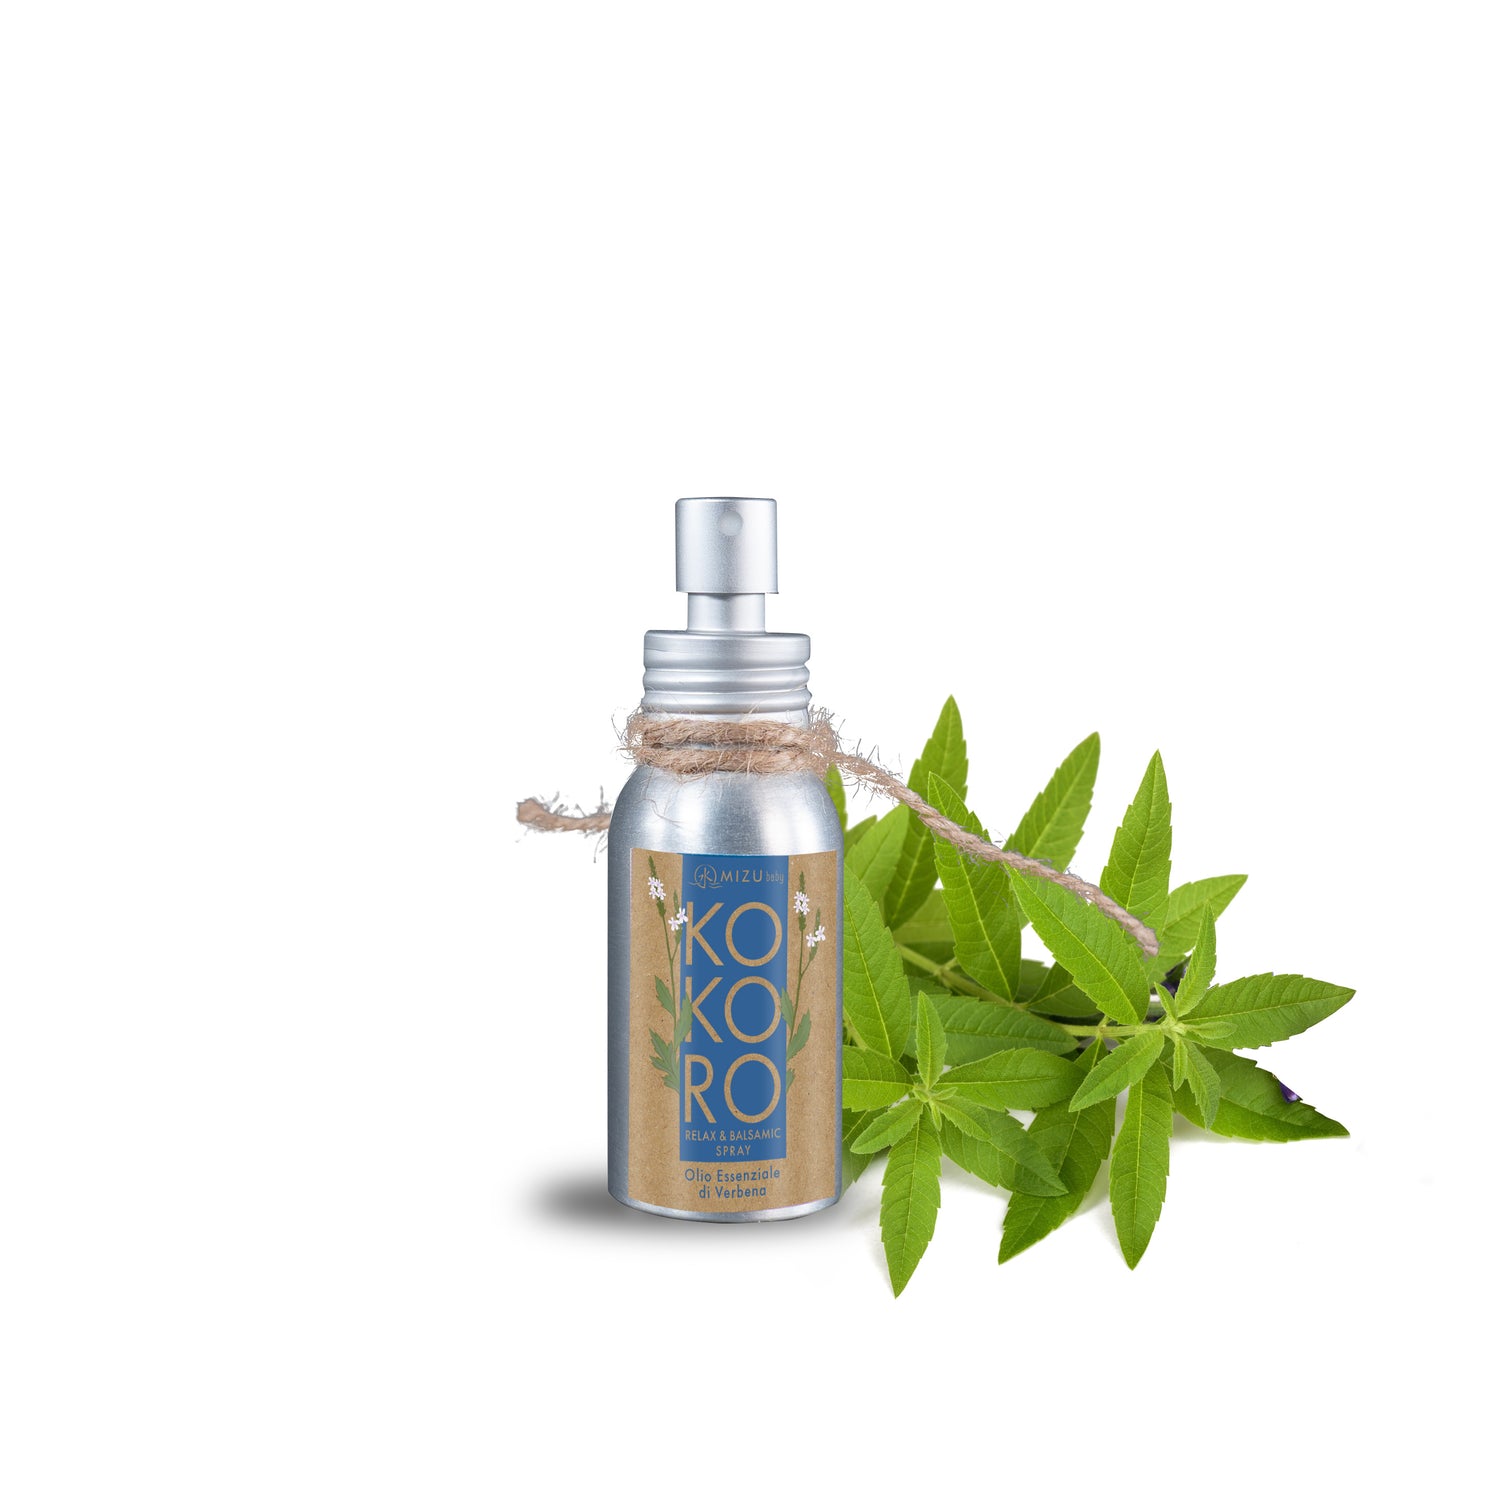 Kokoro - Spray Relax & Balsamic - 50ml